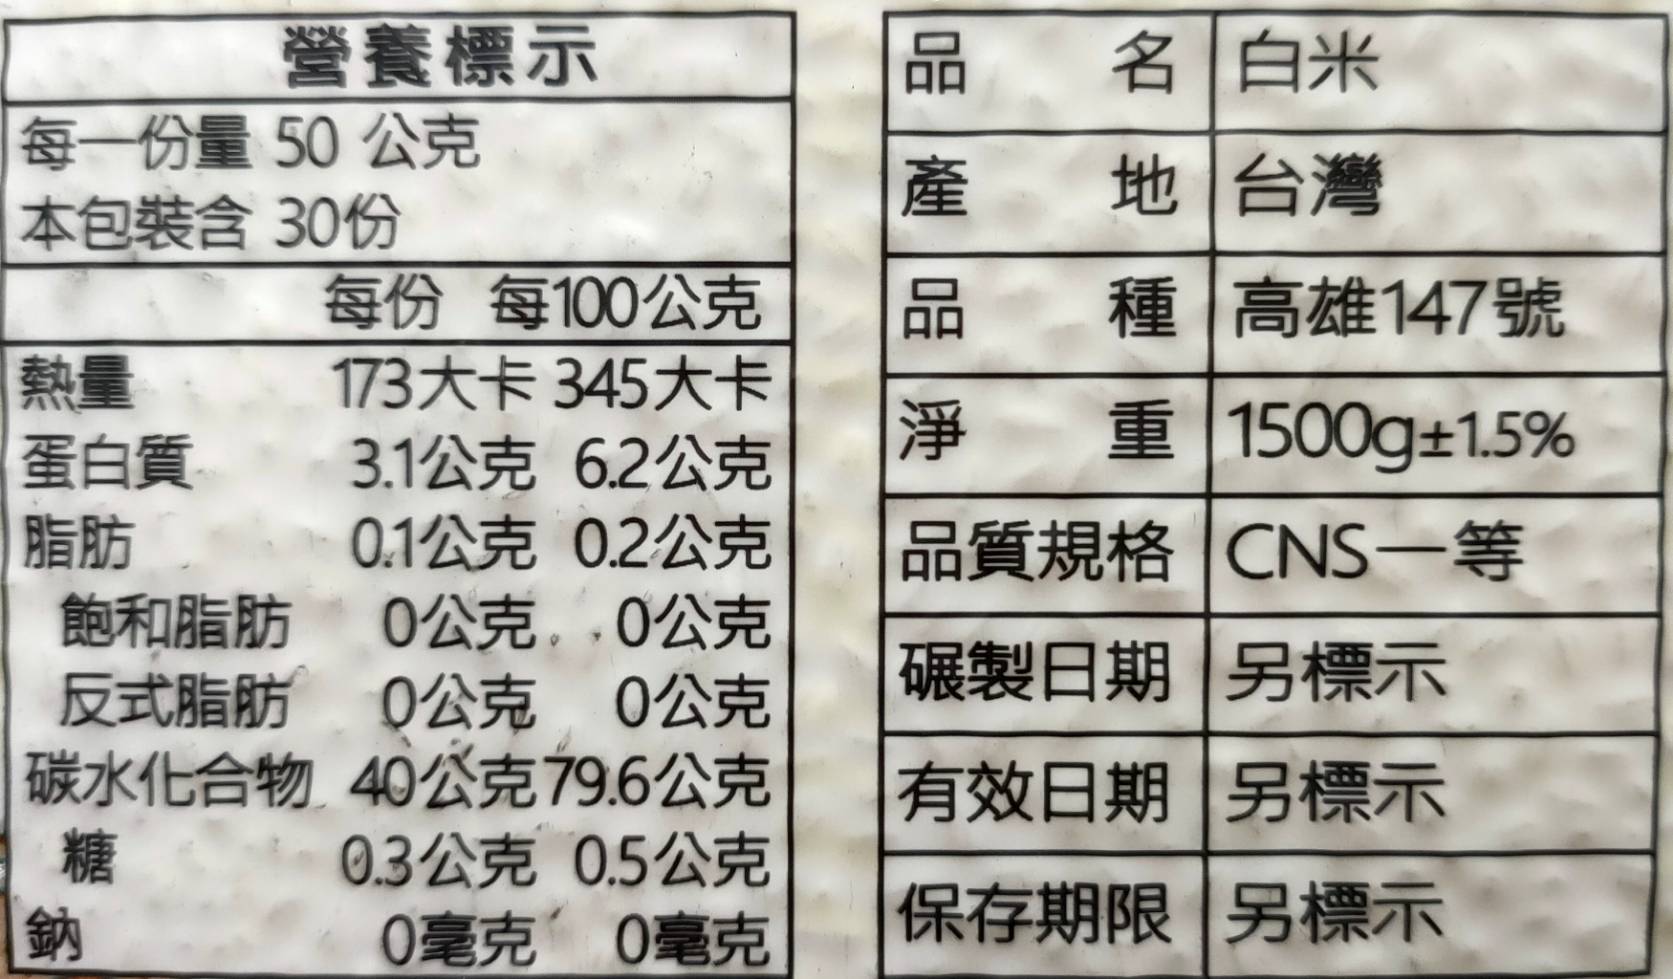 【樂米穀場】台東關山產-銀飯製米1.5KG 關山一等米 台灣米達人競賽冠軍品種